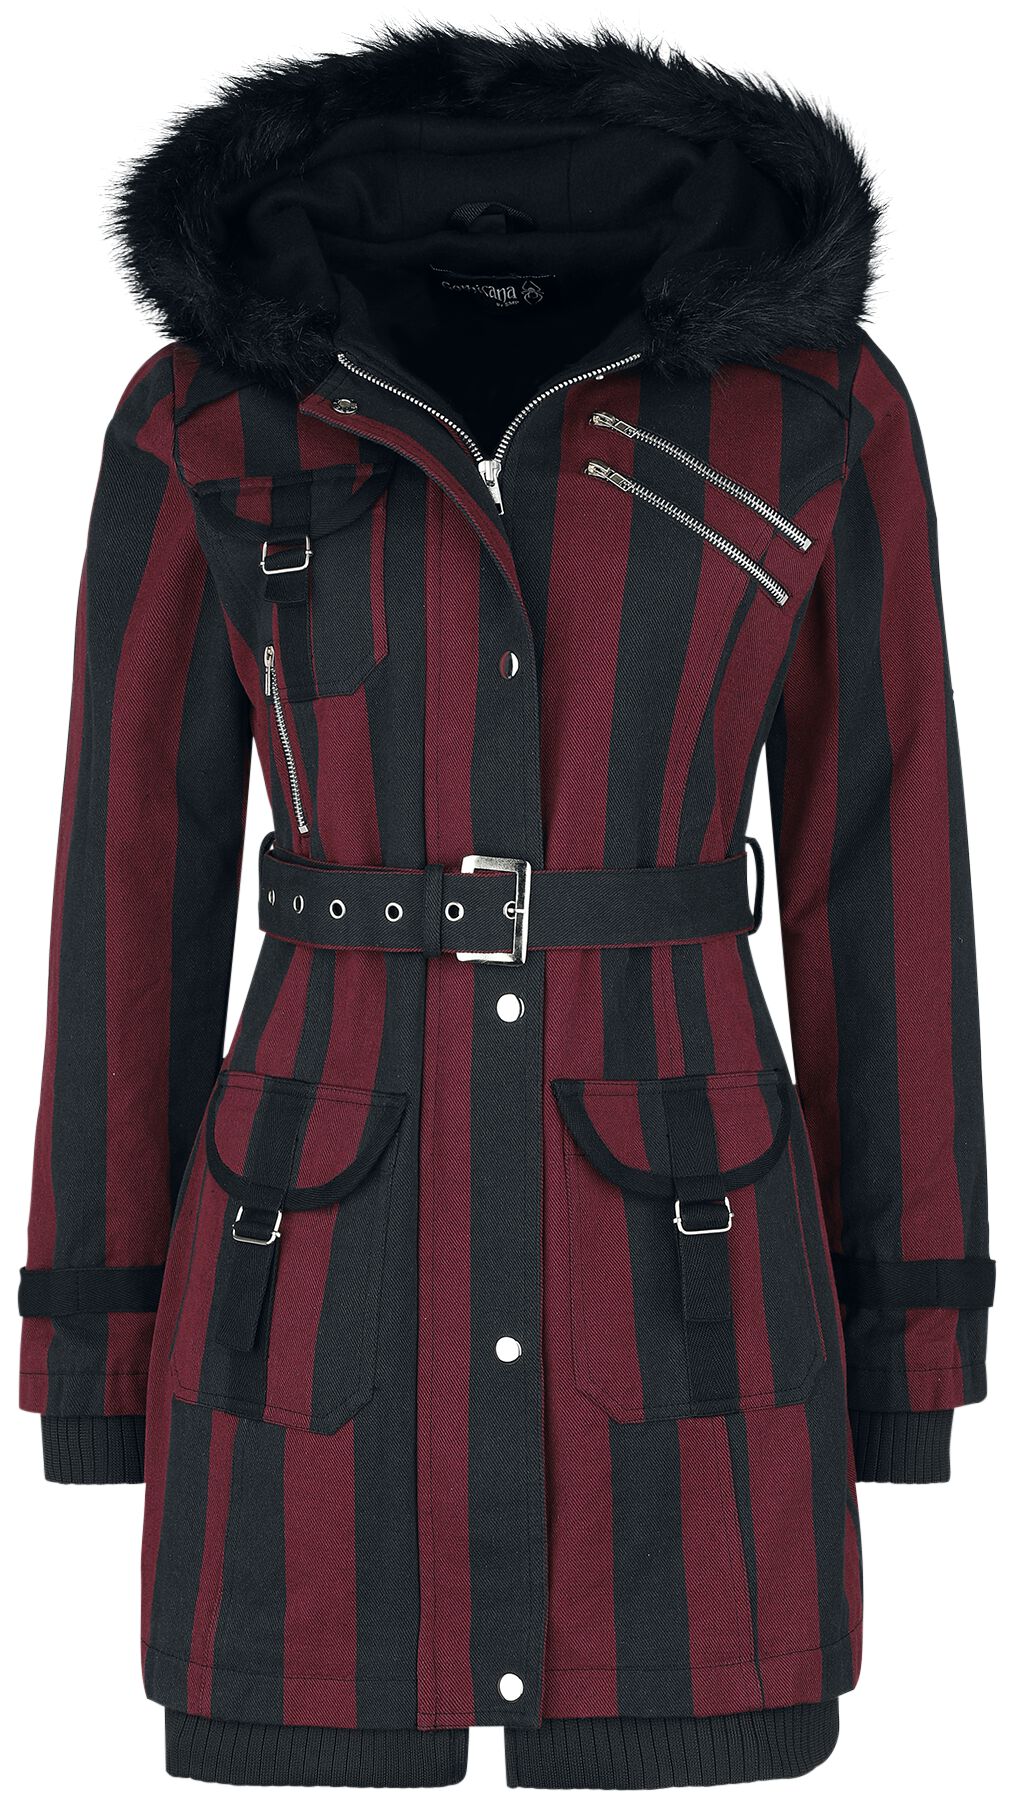 Gothicana by EMP Winterjacke - Multi Pocket Jacket - XS bis 5XL - für Damen - Größe S - schwarz/rot